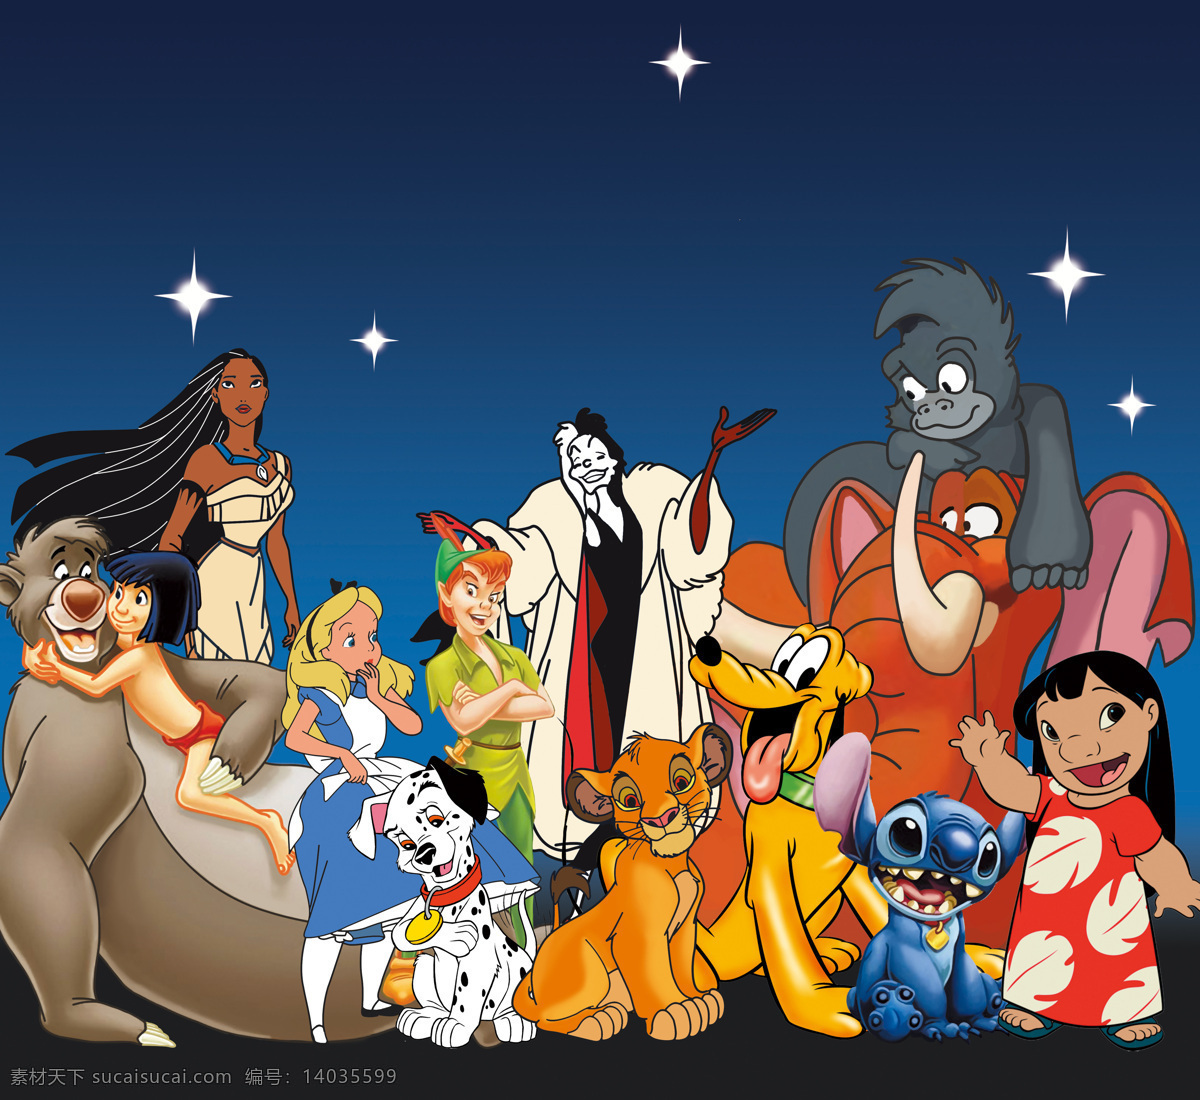 迪士尼集合 迪士尼 集合 卡通 动画 电影 斑点狗 狮子王 米老鼠 唐老鸭